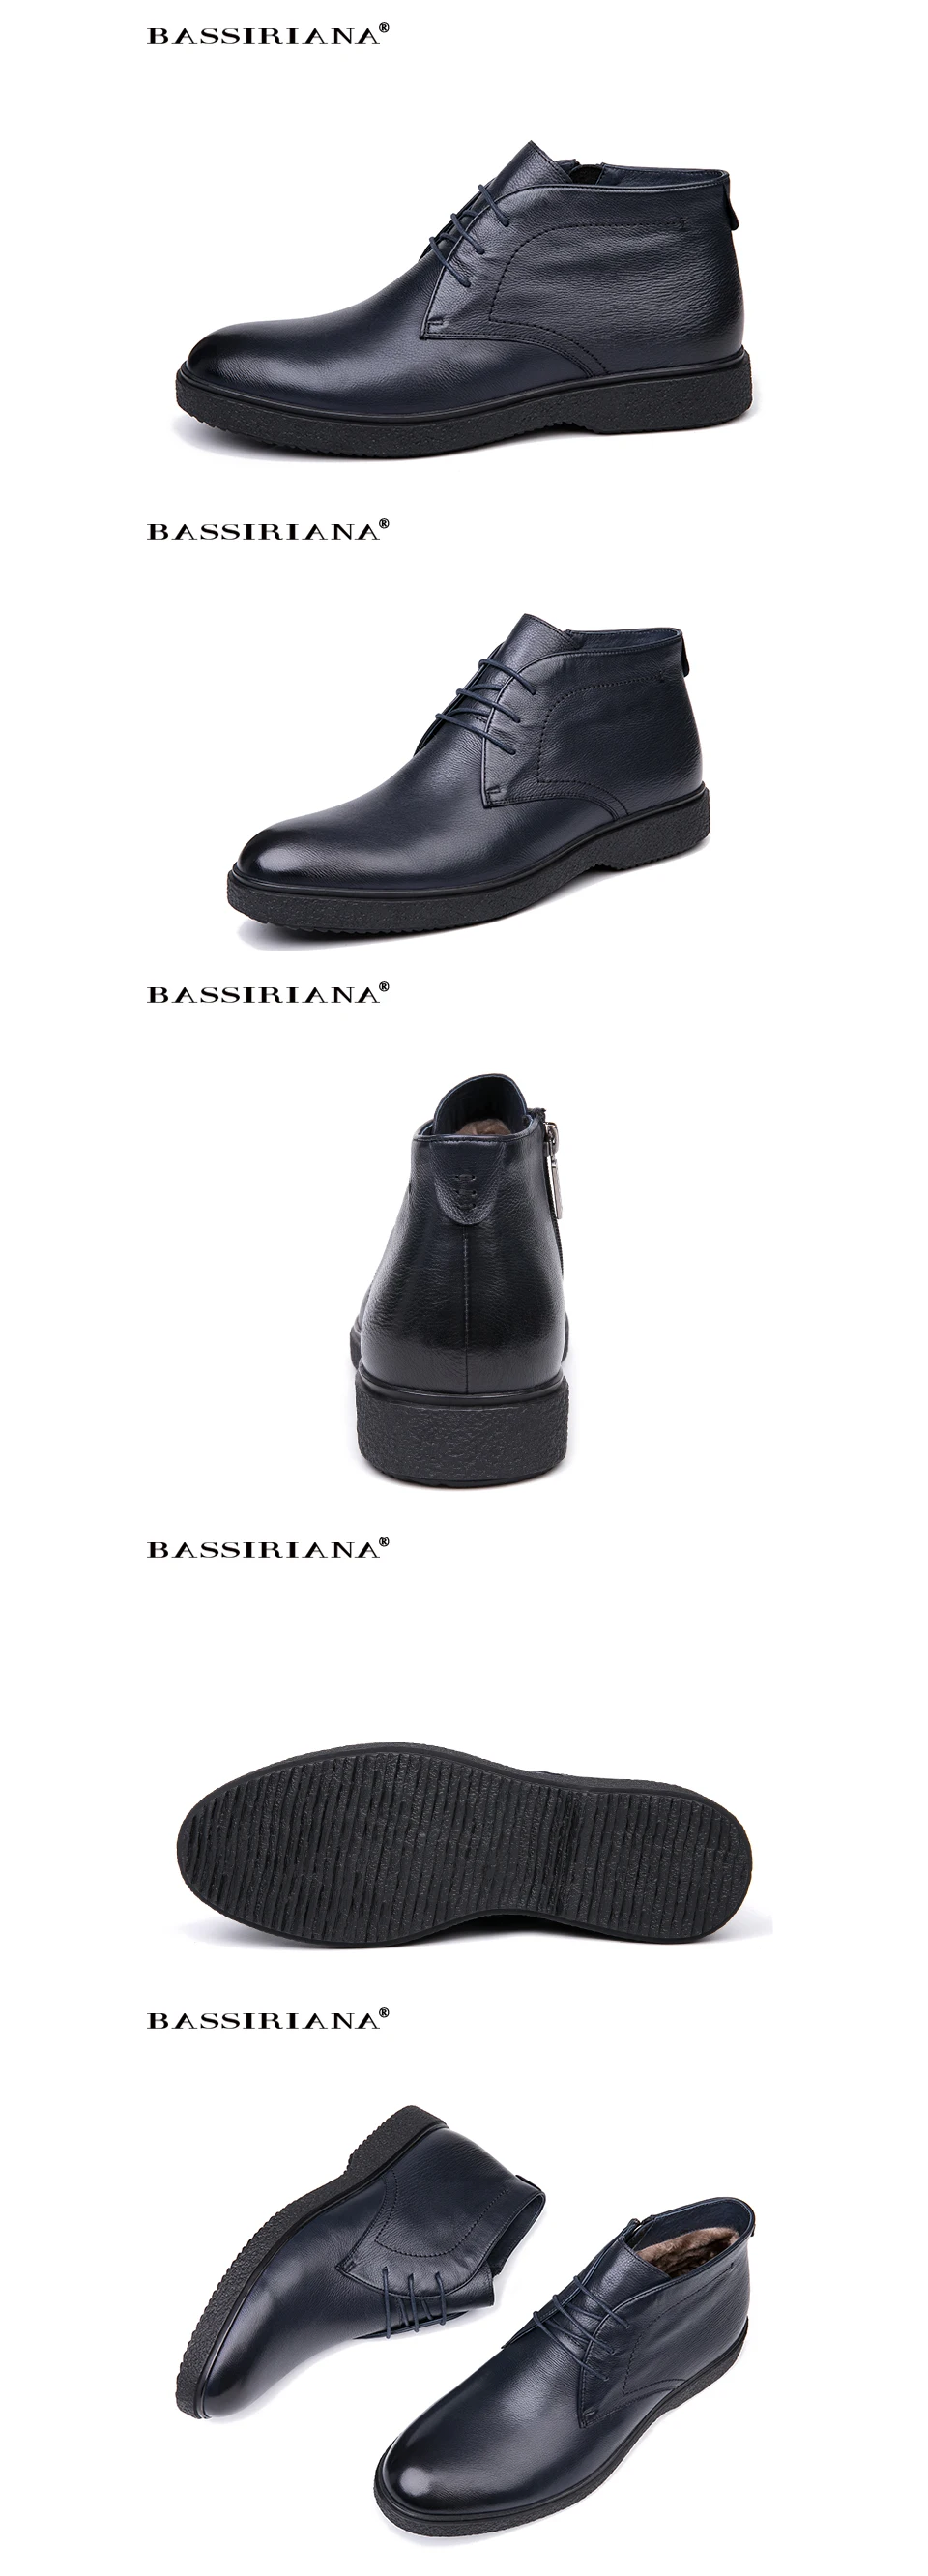 BASSIRIANA/бренд качества Натуральная кожа зимняя обувь мужская теплая обувь мужские с круглым носком Размеры 39-45